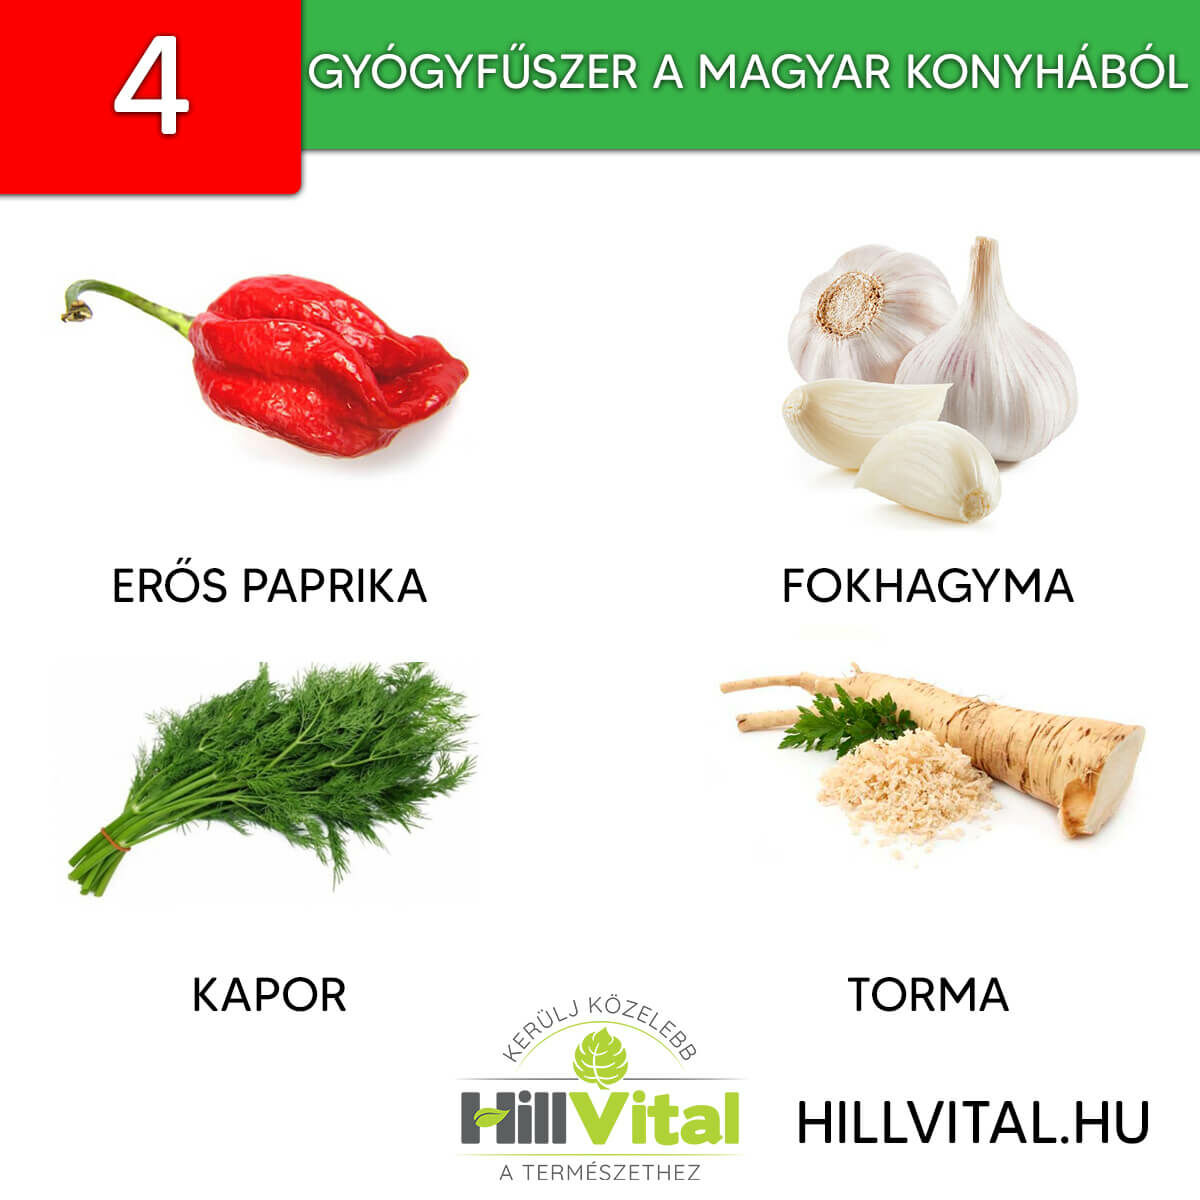 4 elképesztő gyógynövény a magyar konyhából! | HillVital